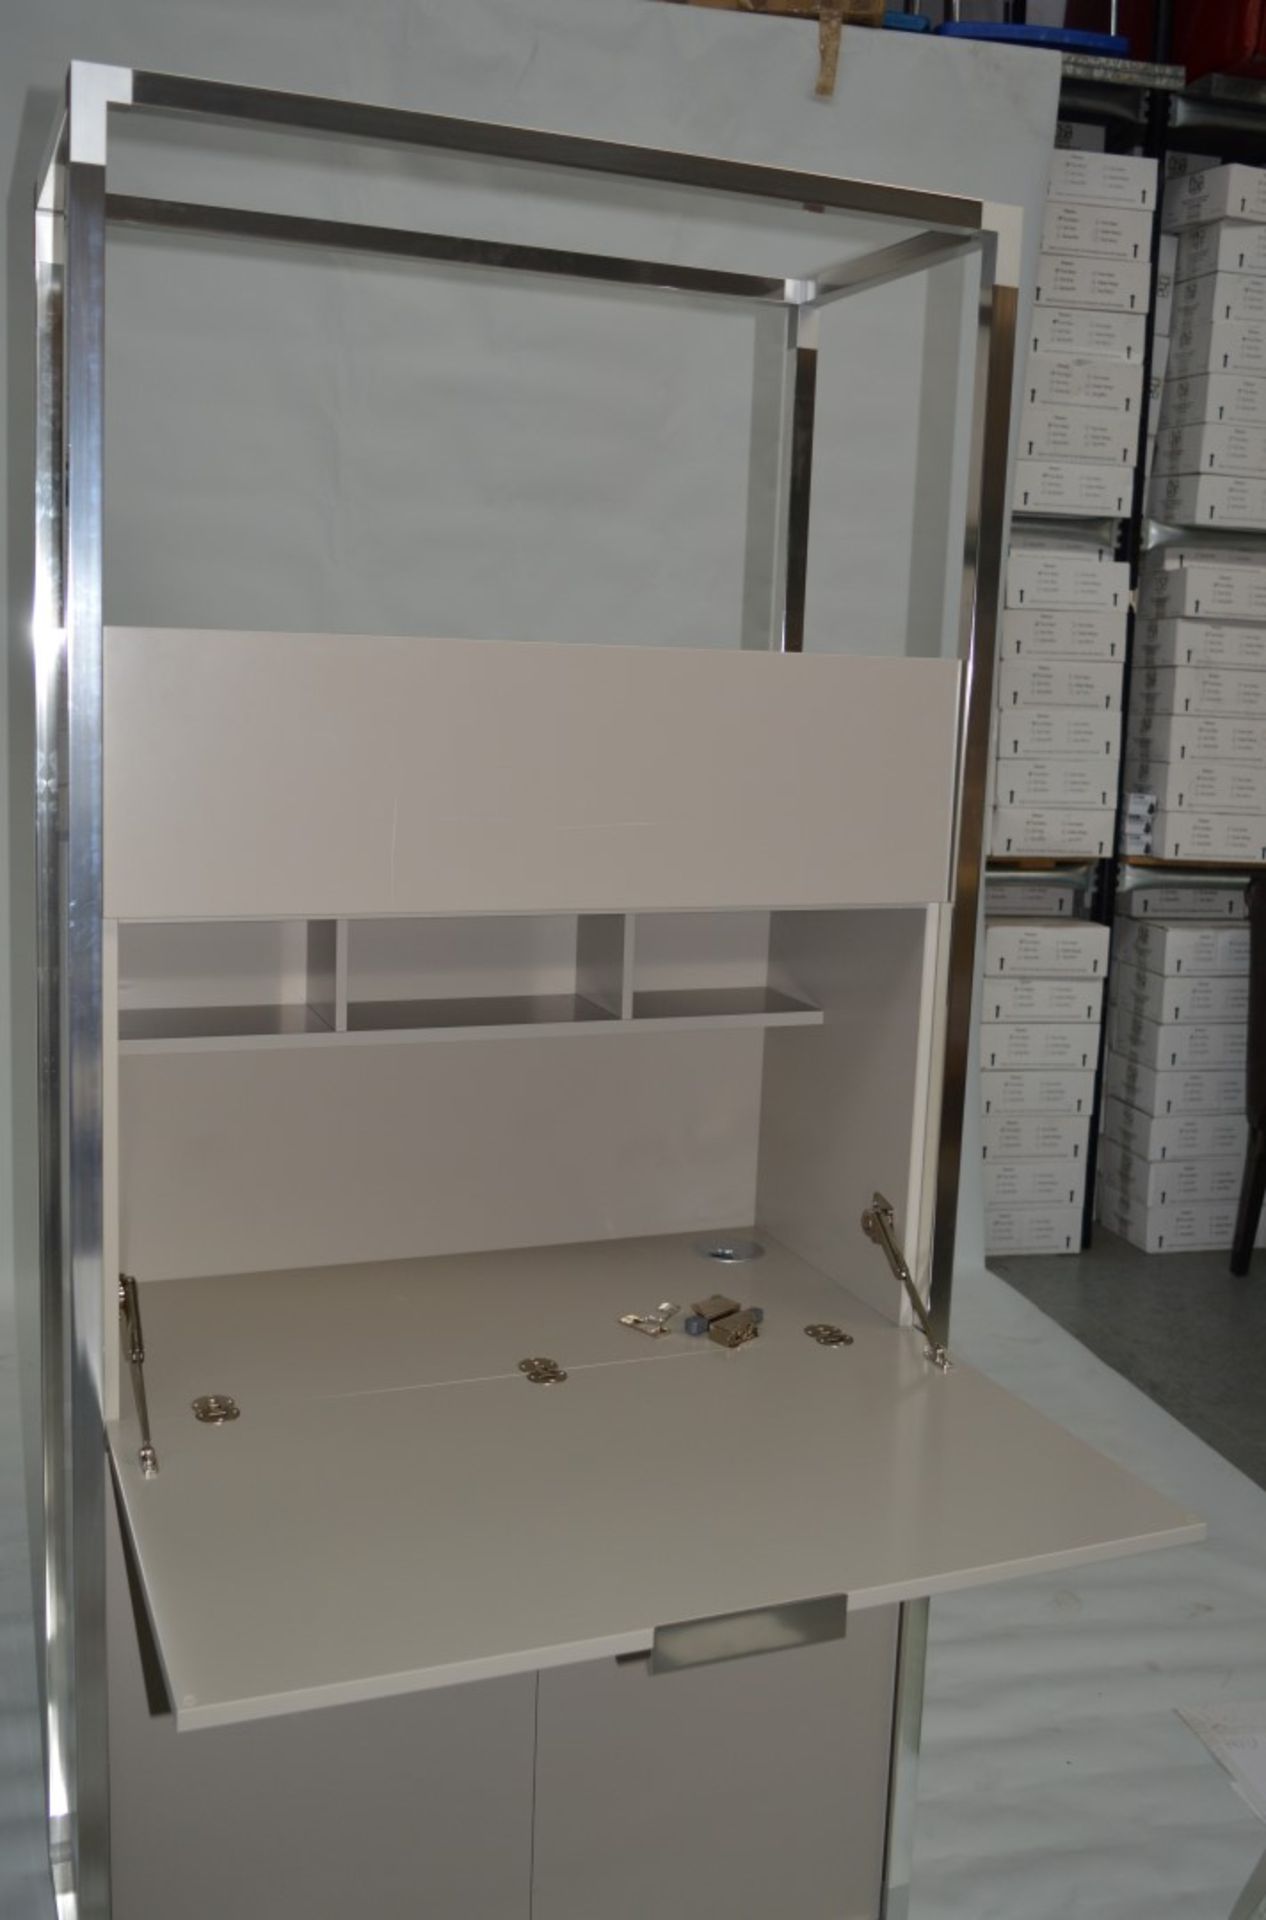 1 x Ligne Roset Compact Work Station Desk - Dimesions: H190 x D45 x W90cm - Secretaire Argile - Image 2 of 16